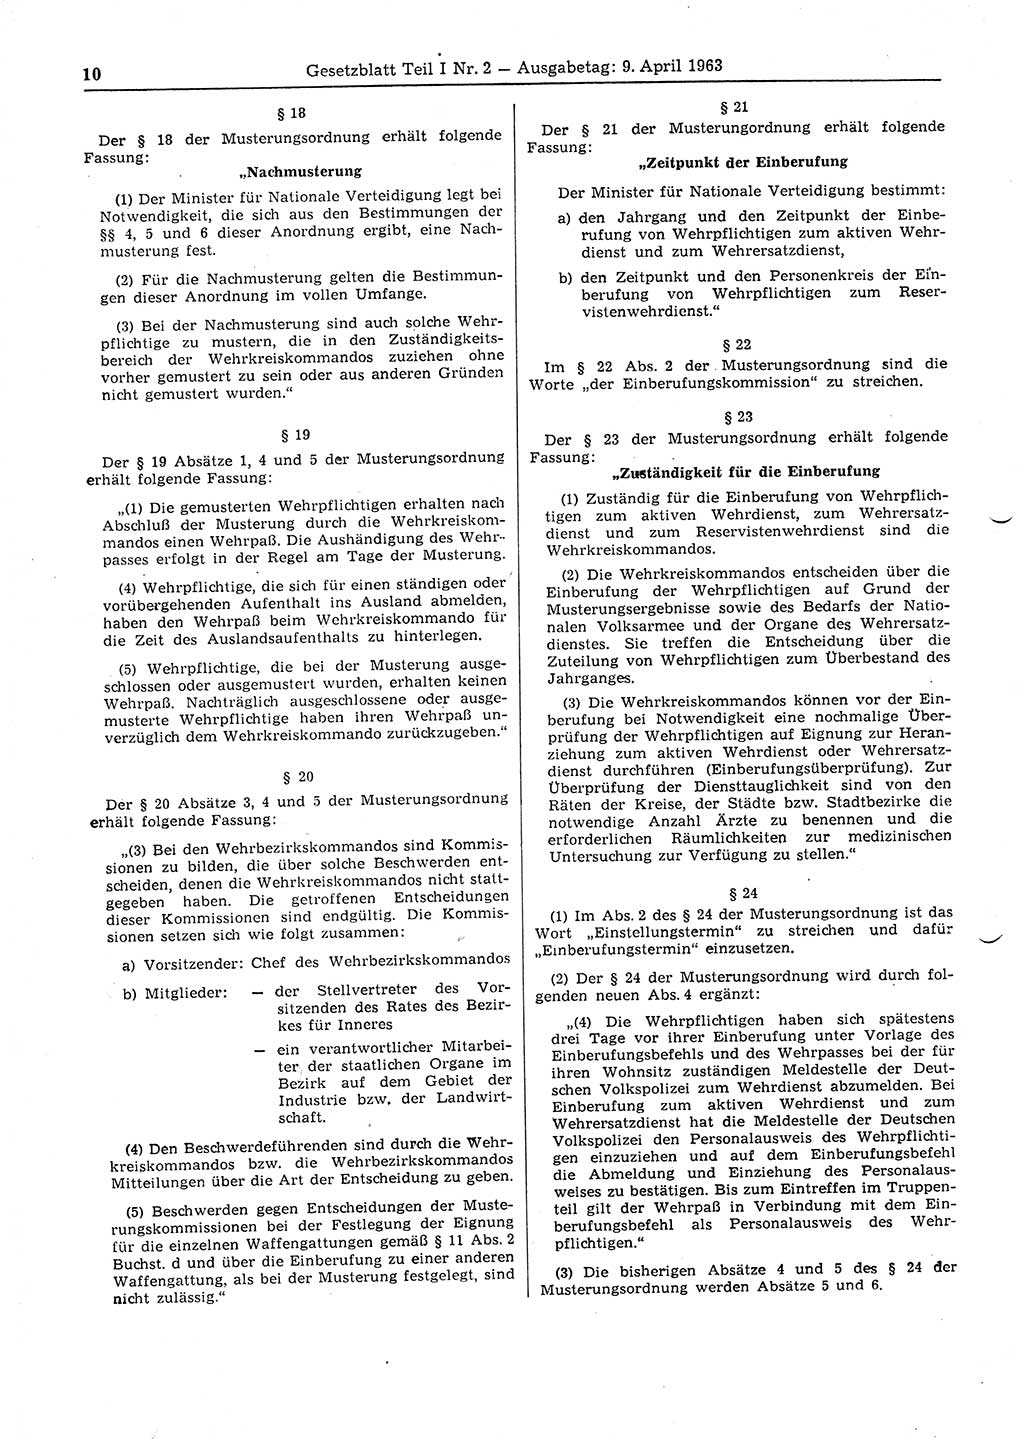 Gesetzblatt (GBl.) der Deutschen Demokratischen Republik (DDR) Teil Ⅰ 1963, Seite 10 (GBl. DDR Ⅰ 1963, S. 10)